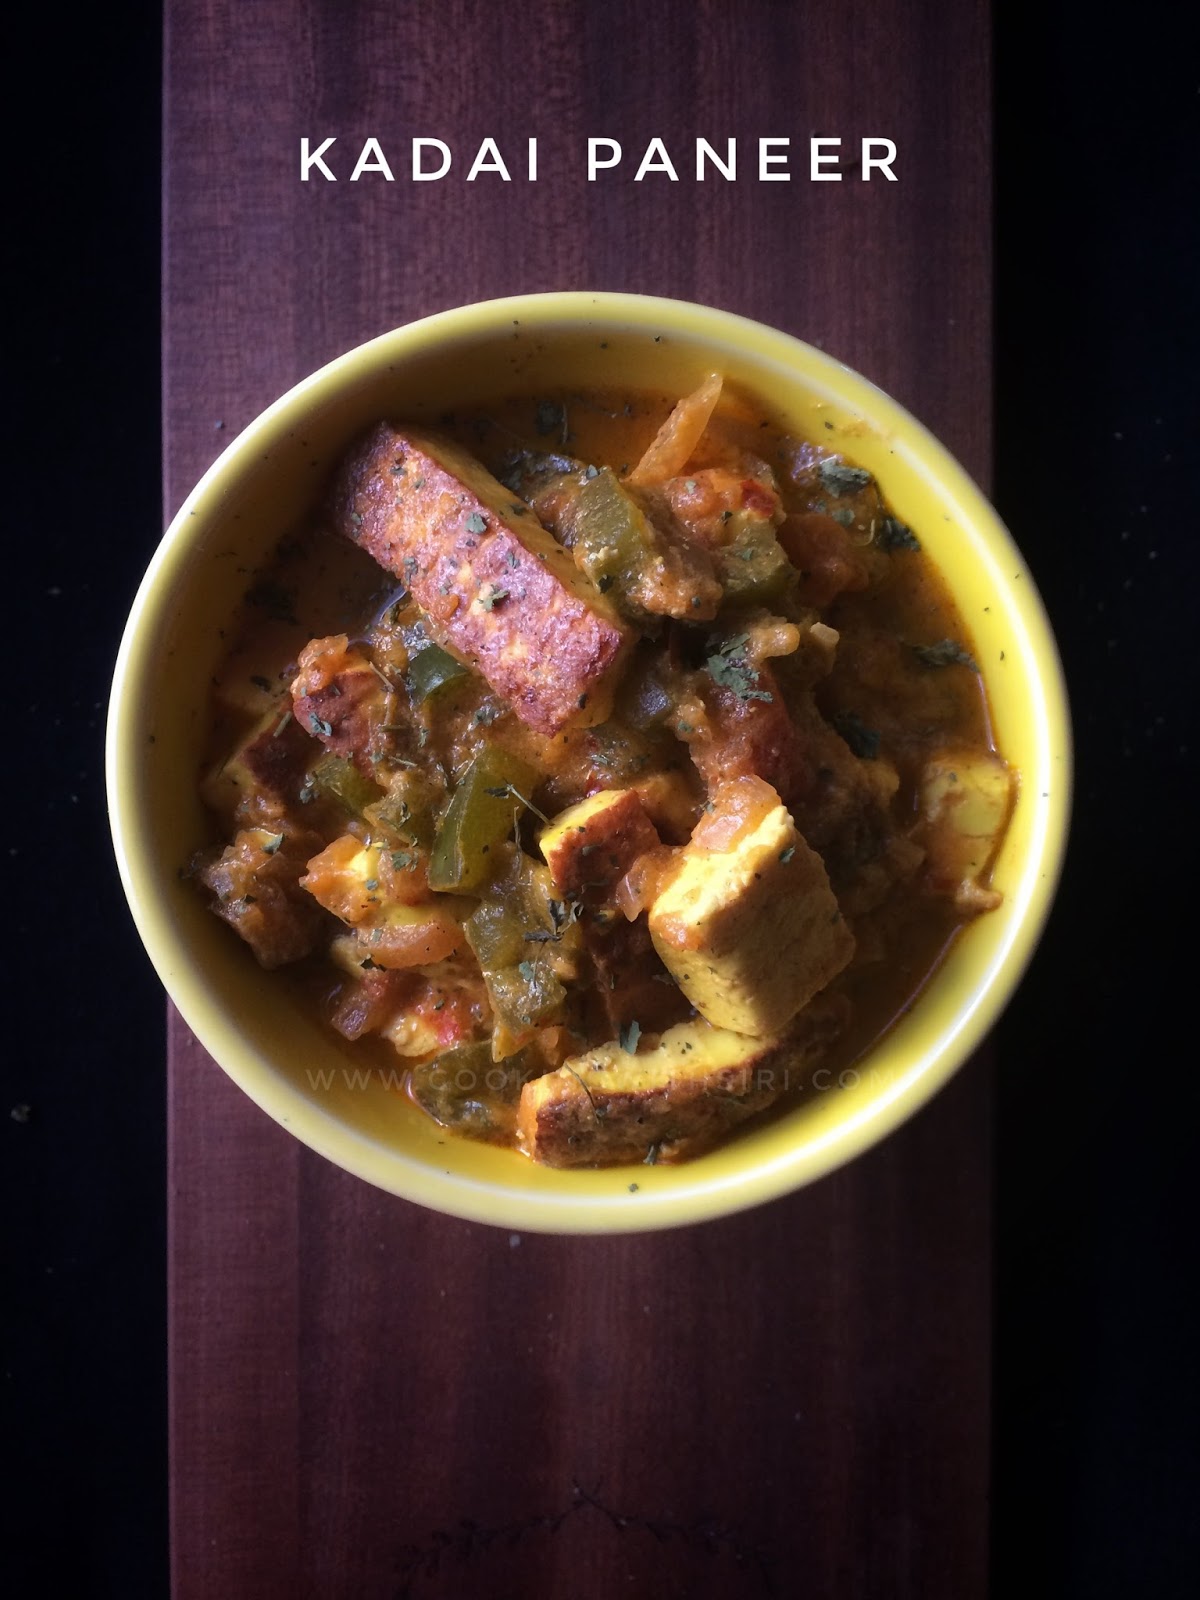 Cooking With Siri Recipes Reviews And Reflections Kadai Paneer Recipe With Homemade Kadai Masala Powder